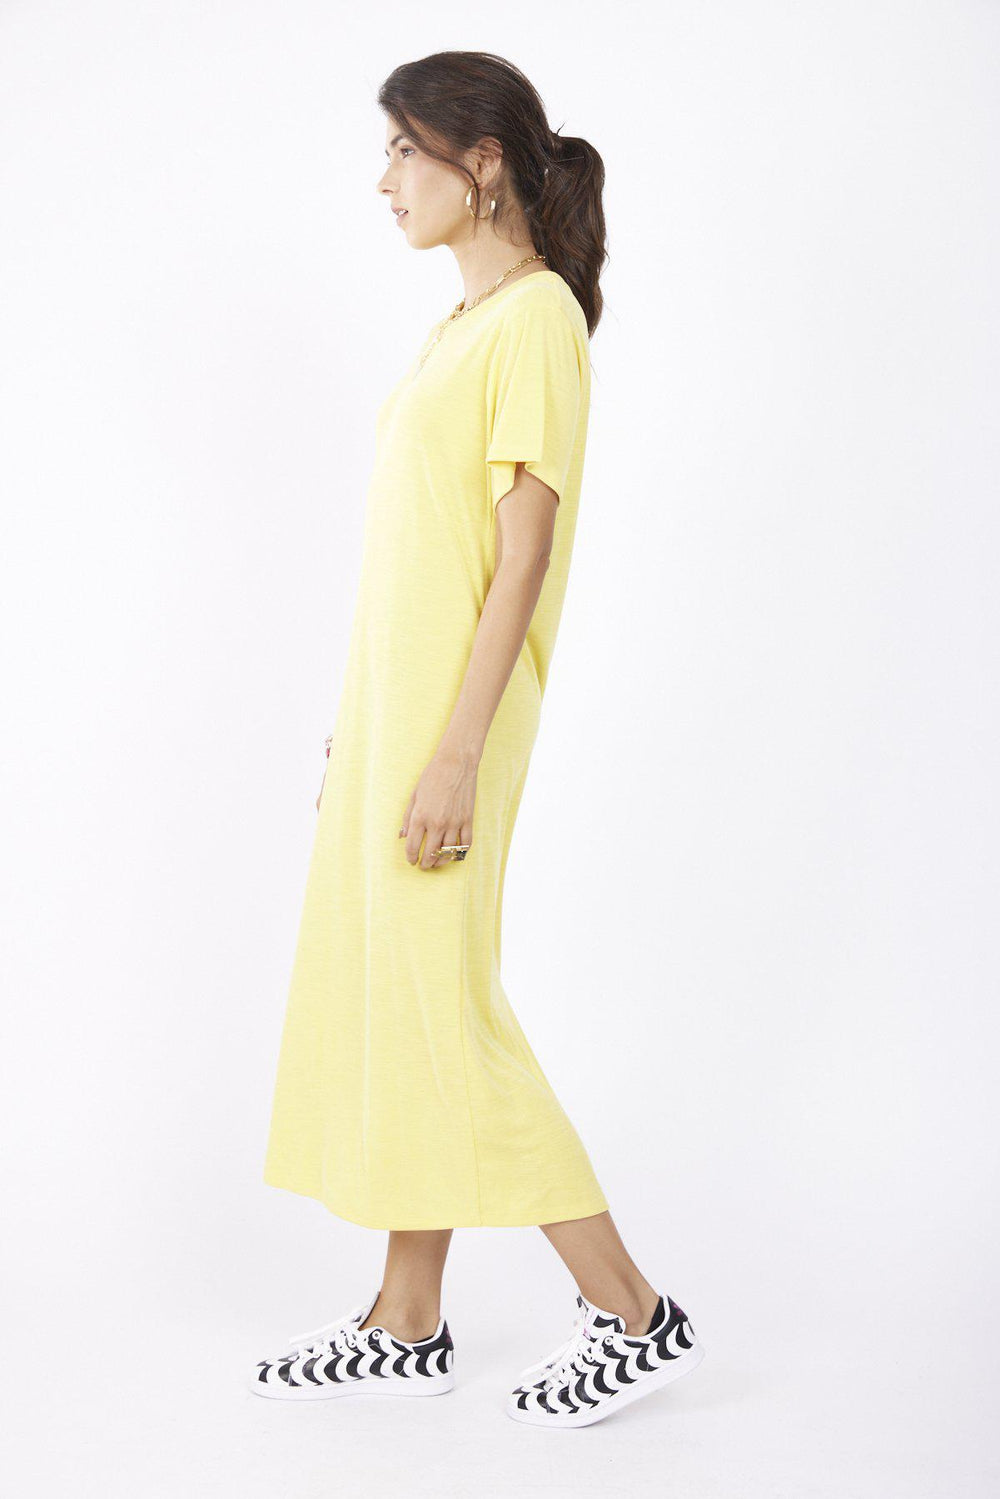 שמלת ברלין בצבע צהוב - Razili Studio